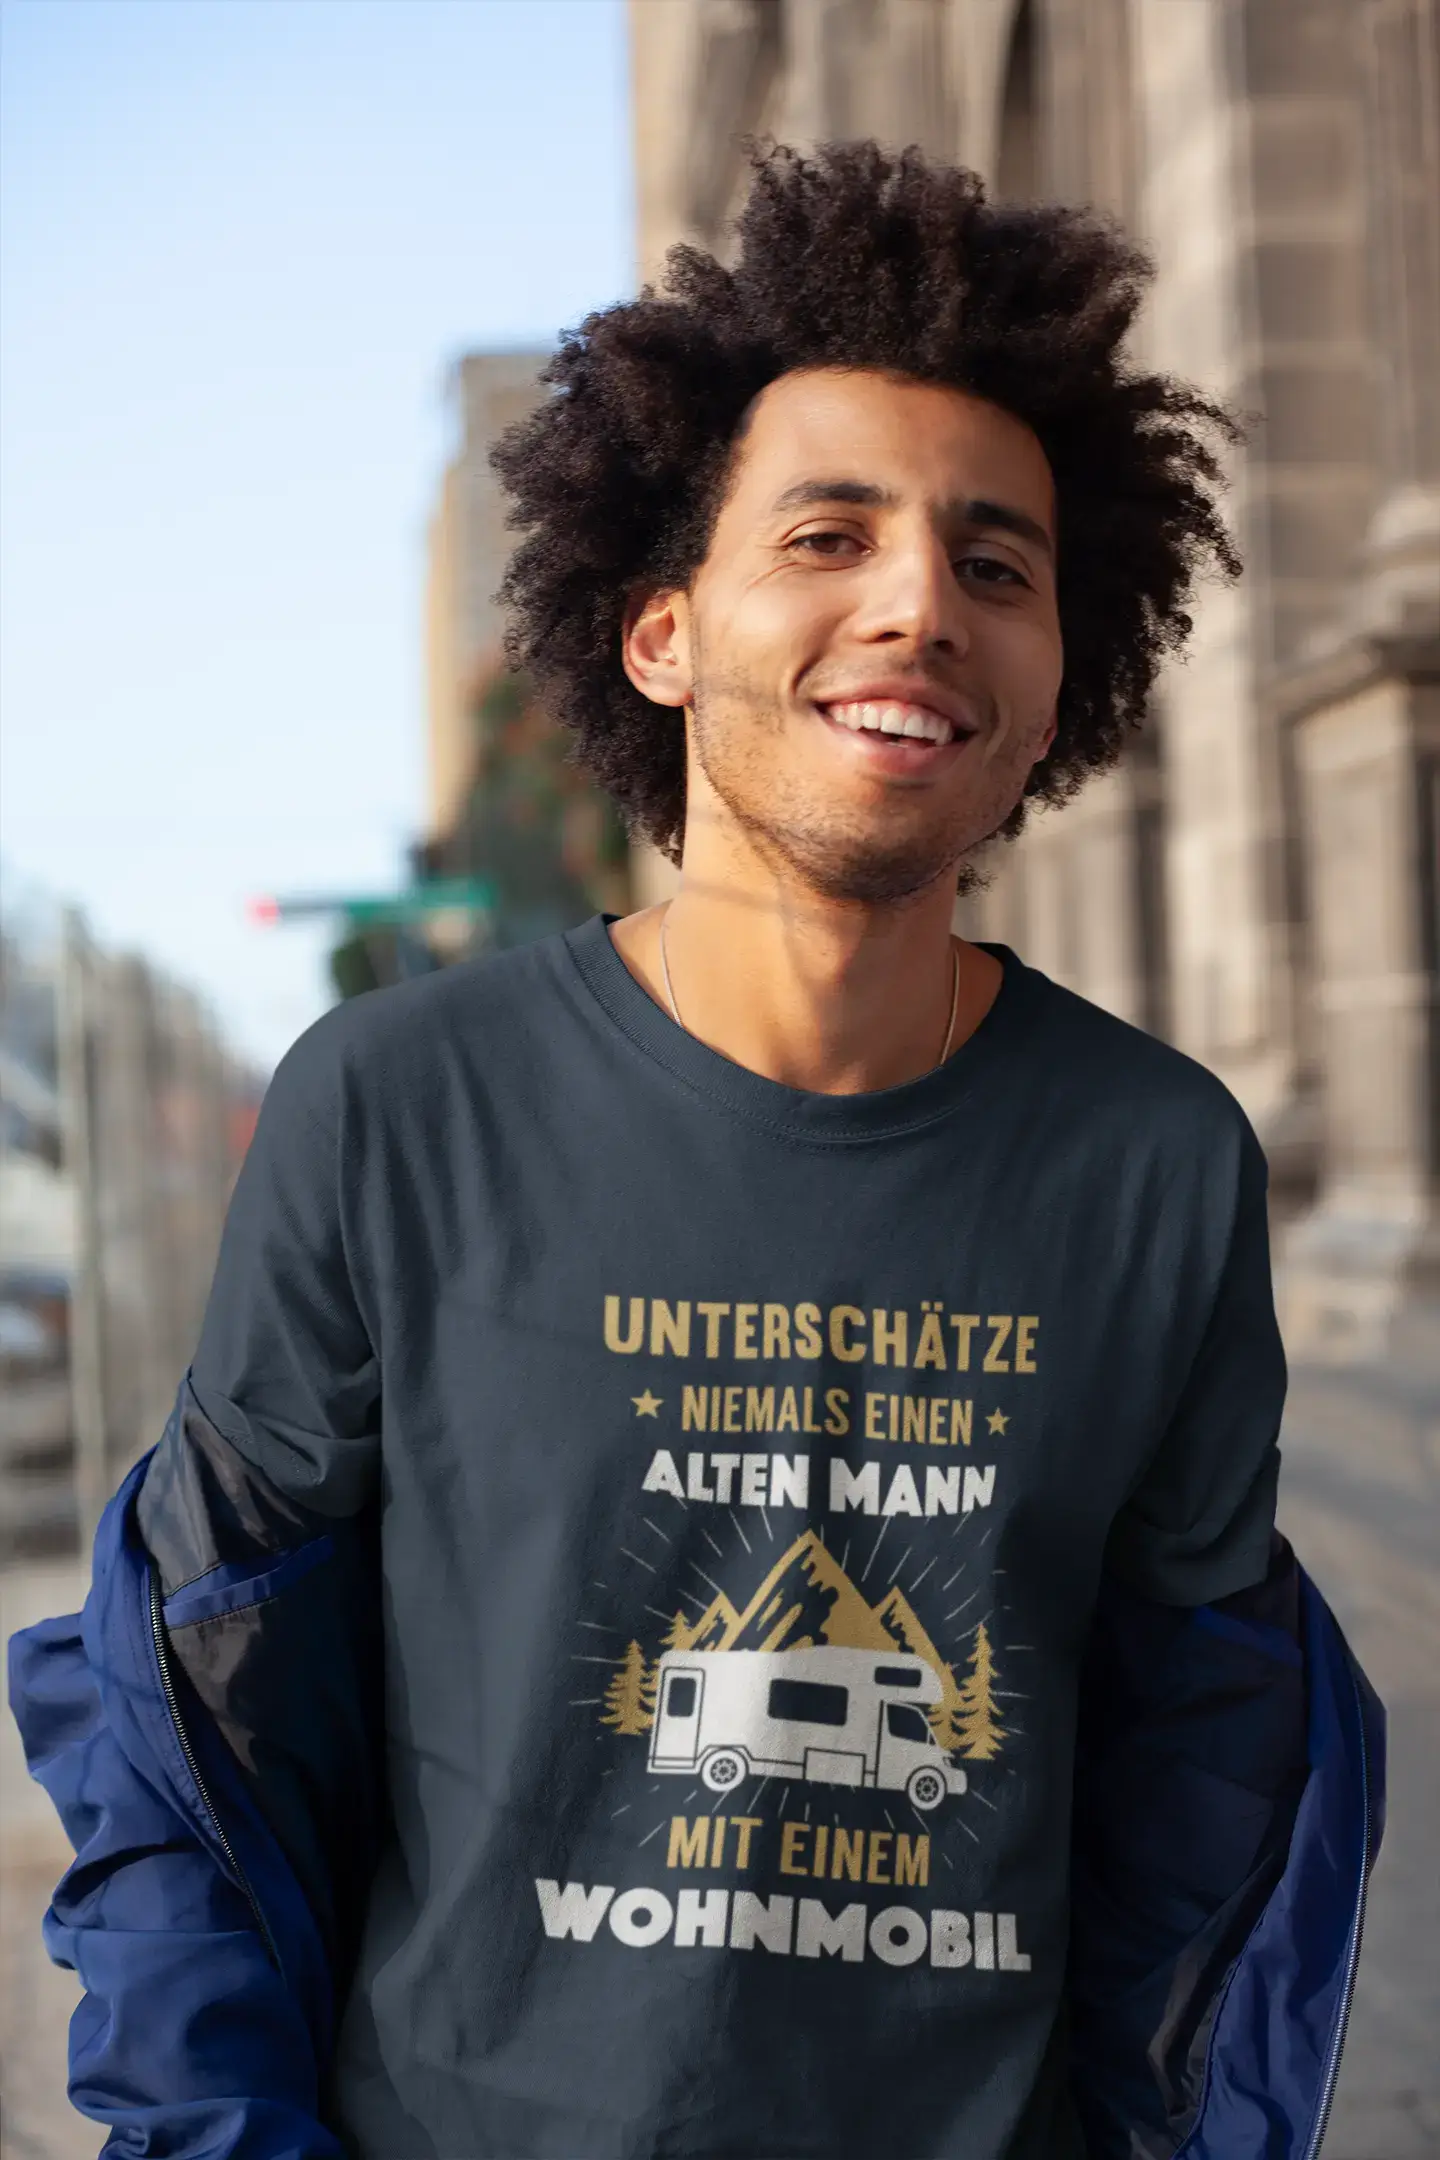 Men's Graphic T-Shirt Unterschätze Niemals Wohnmobil Idea Gift